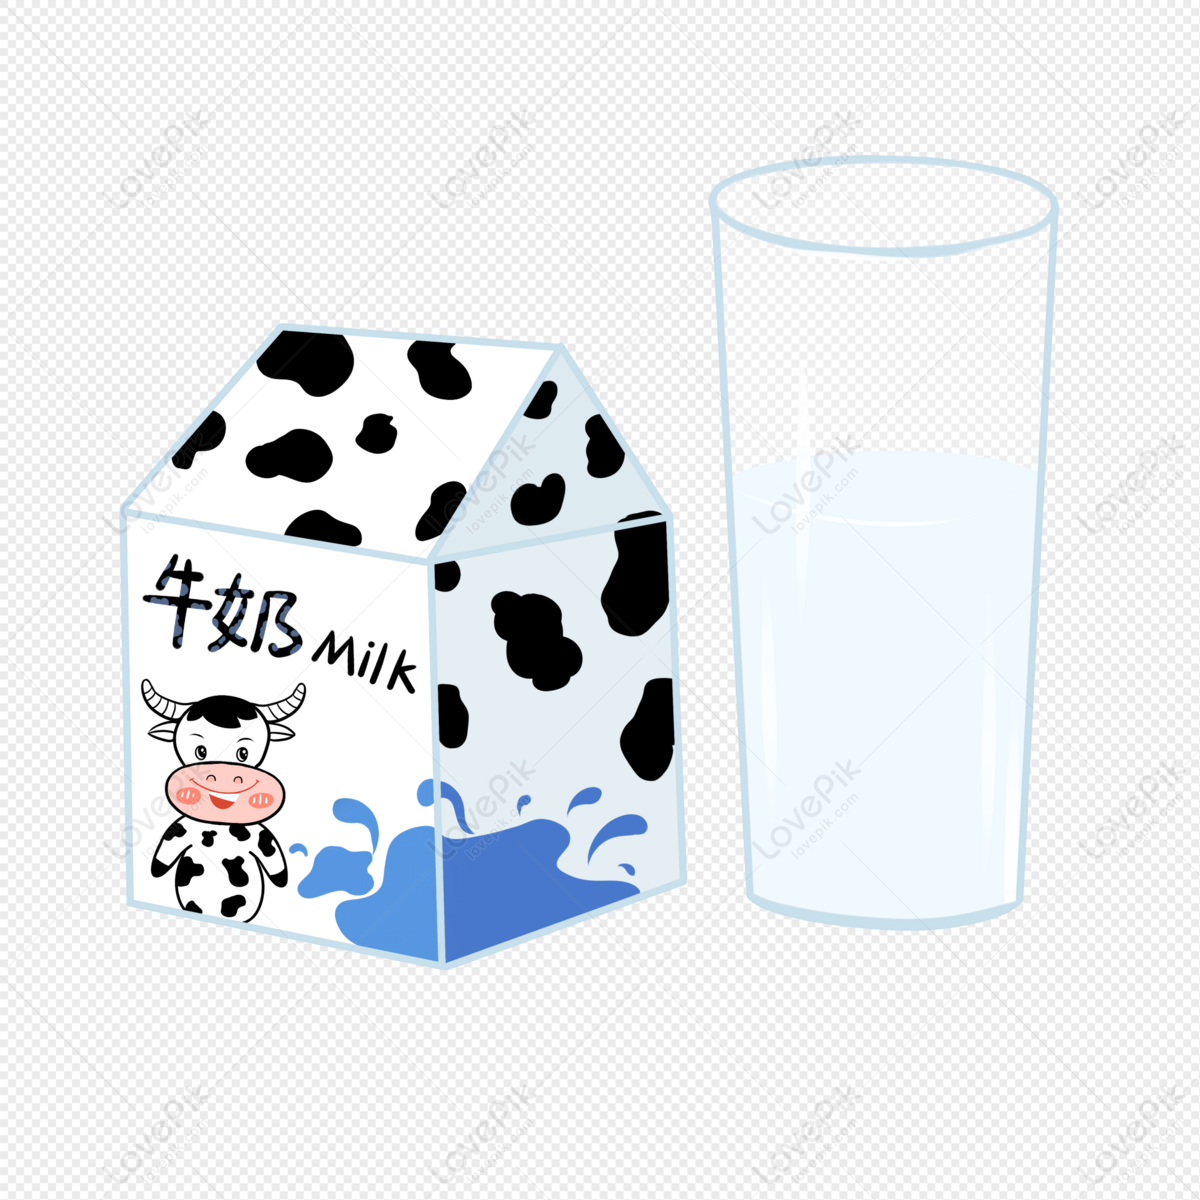 Bạn là tín đồ của thức uống sữa và thích sưu tầm những hình ảnh đẹp về hộp sữa? Bộ sưu tập milk box images chắc chắn sẽ là nguồn cảm hứng tuyệt vời cho bạn. Khám phá ngay những hình ảnh độc đáo và đầy màu sắc về loại đồ uống này!